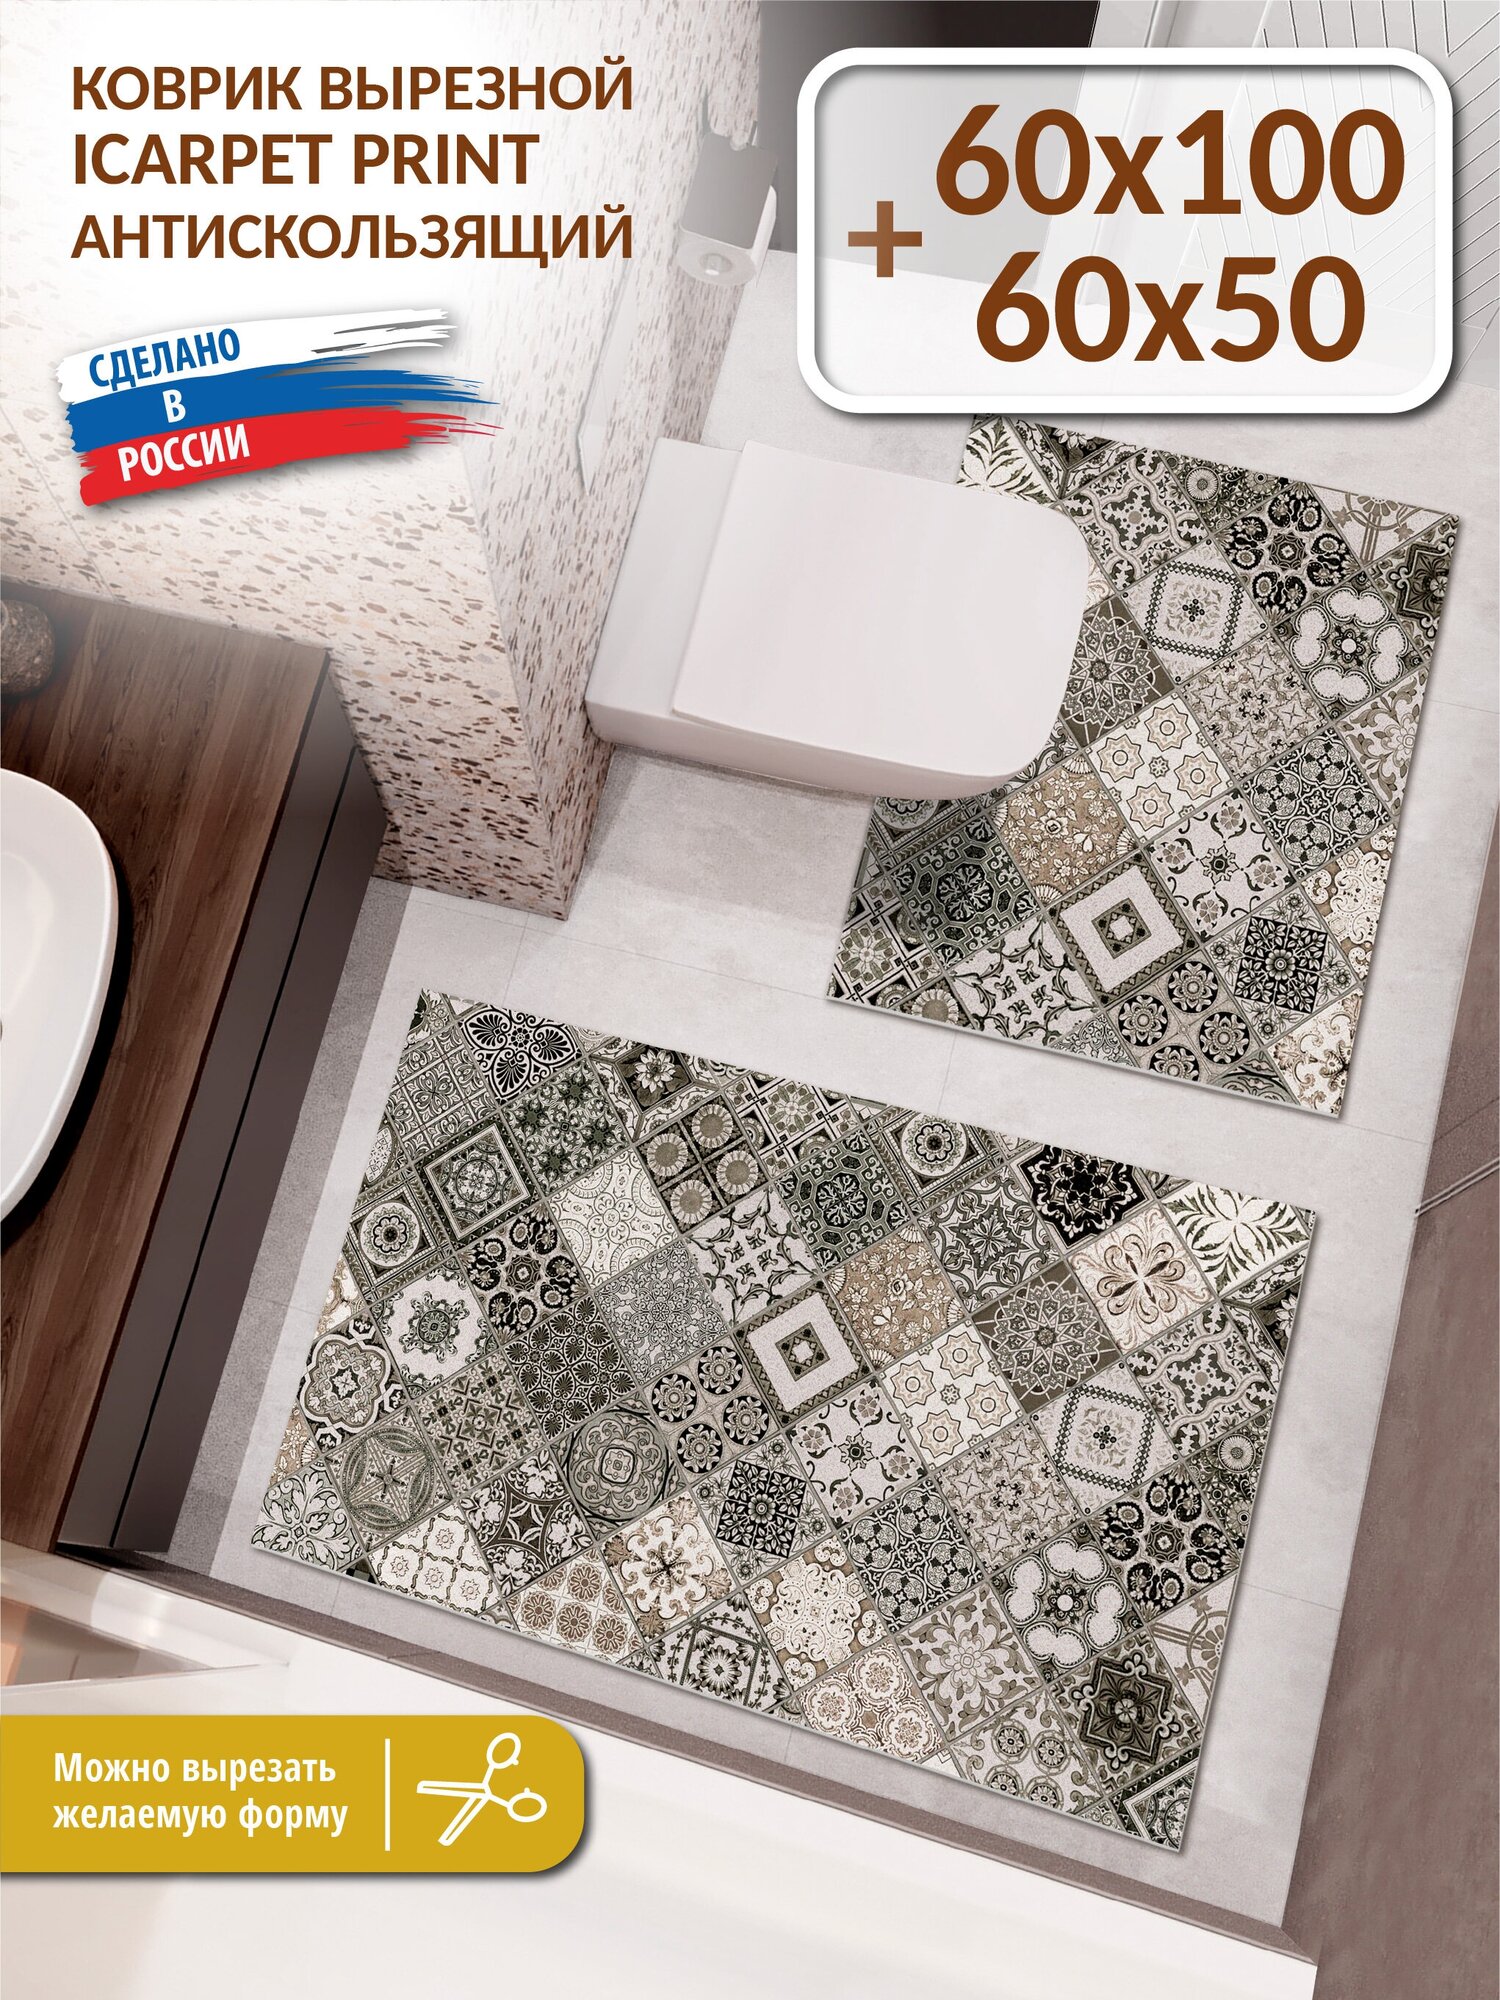 Набор вырезных антискользящих ковриков для ванной и туалета Icarpet PRINT 60х100+60х50 Плитка Тоскана мокко 133